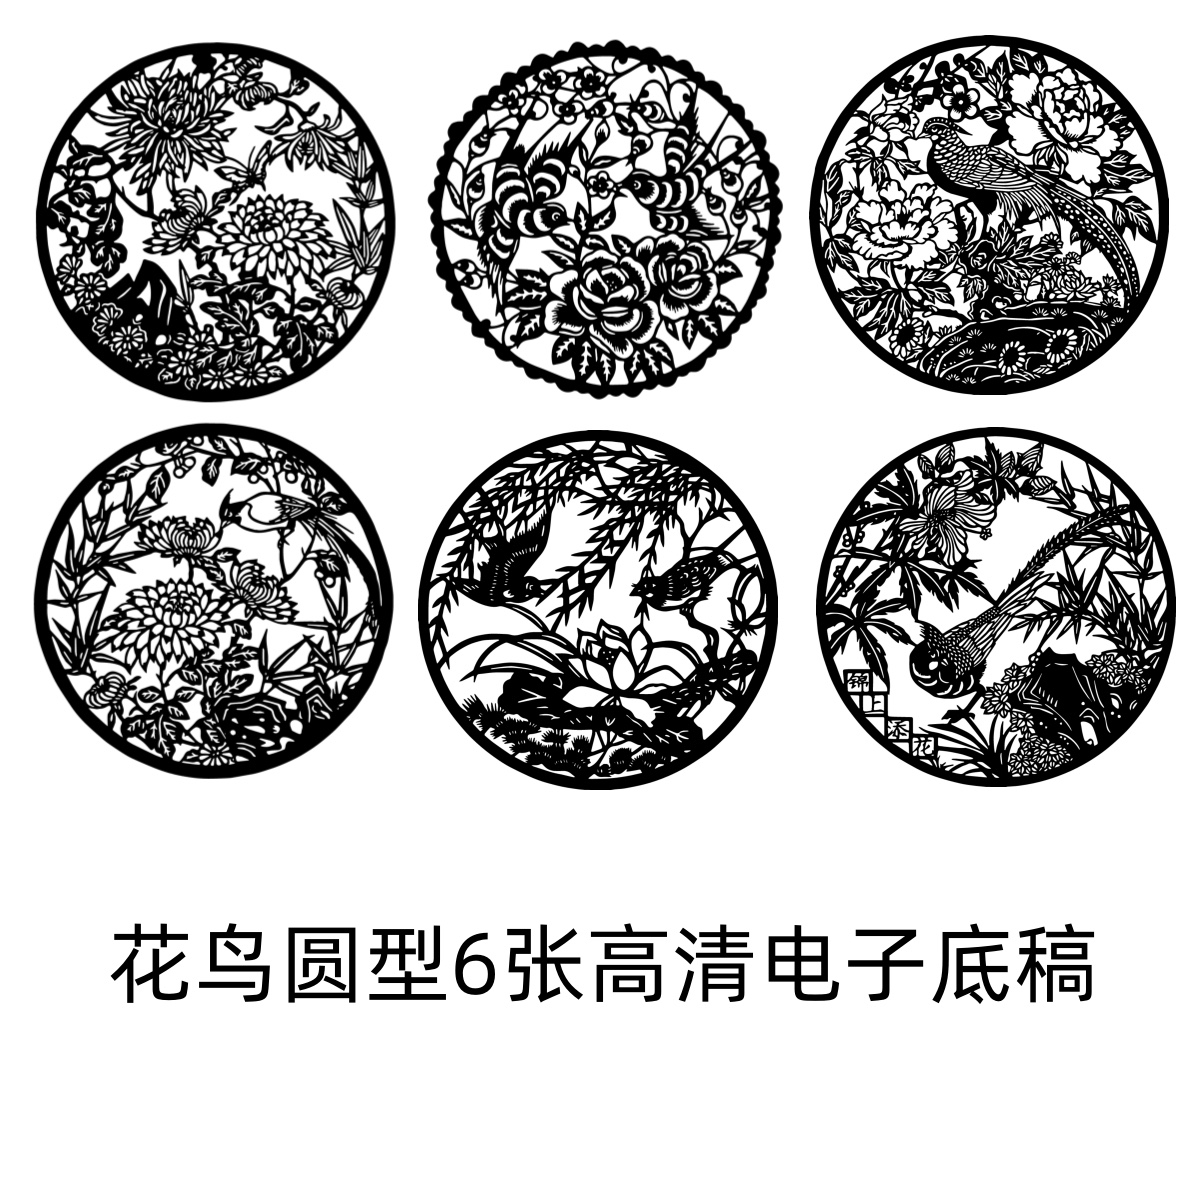 花鸟剪纸窗花图样刻纸图案电子版底稿素材高清圆中国风传统文化